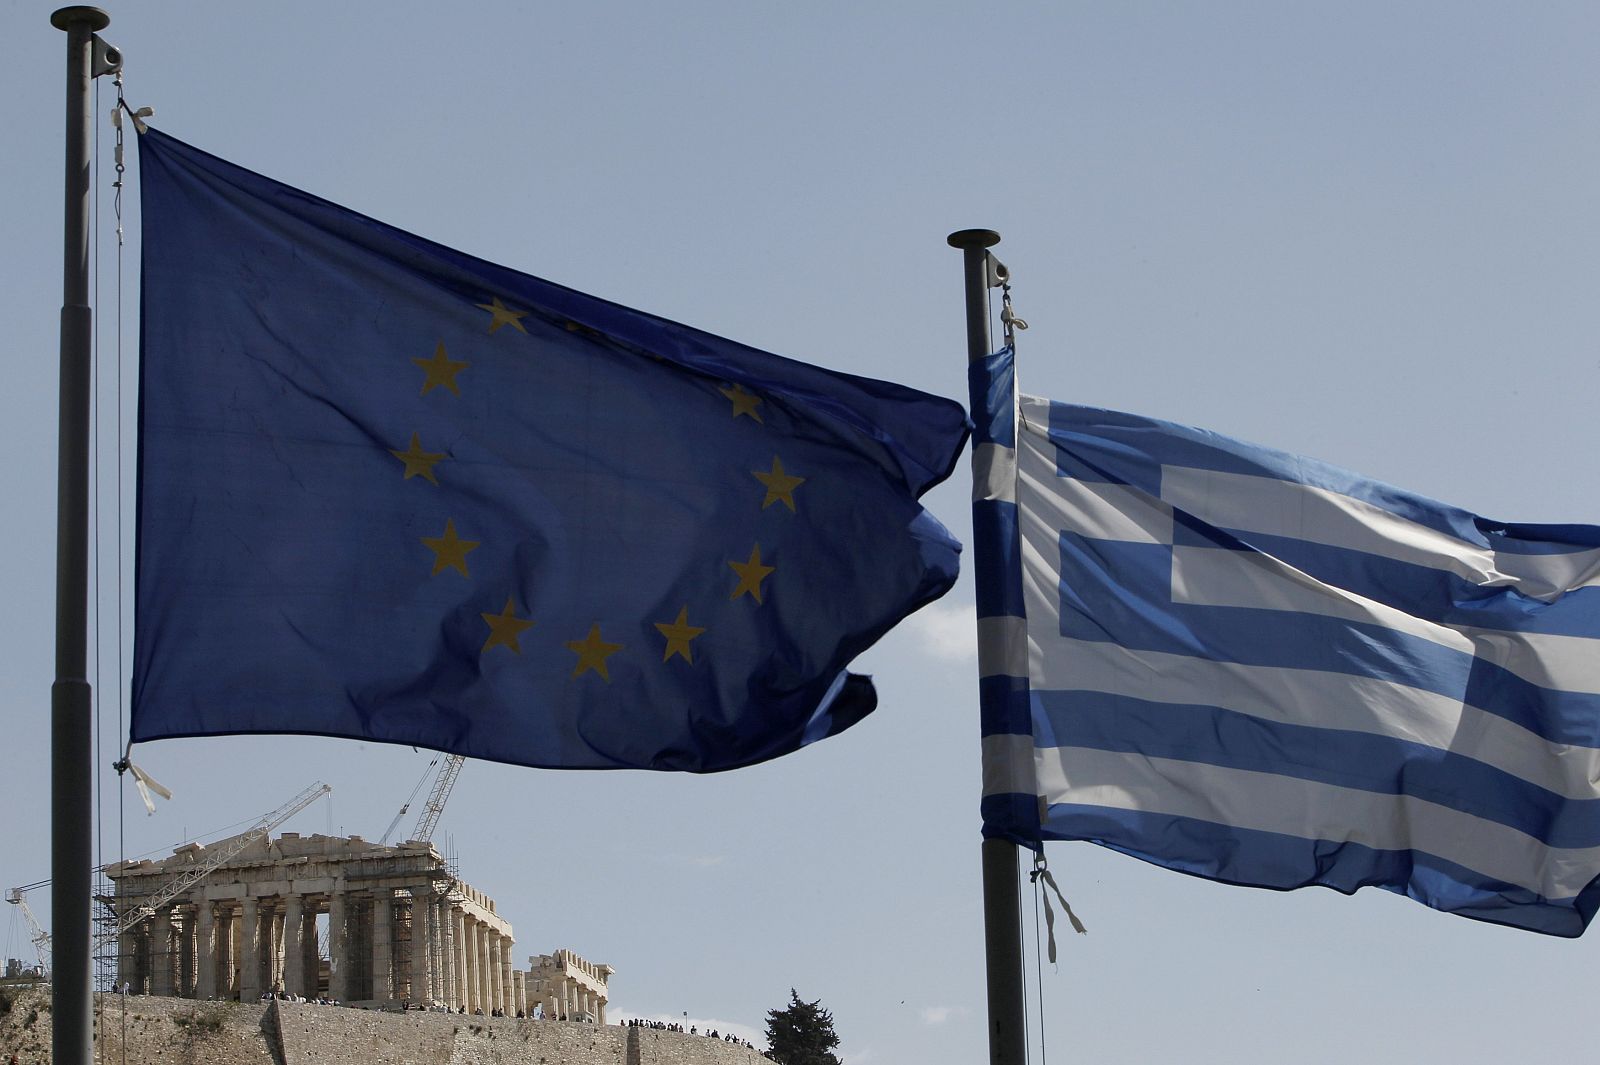 La bandera de la UE ondea junto a la de Grecia en las cercanías del Partenón.